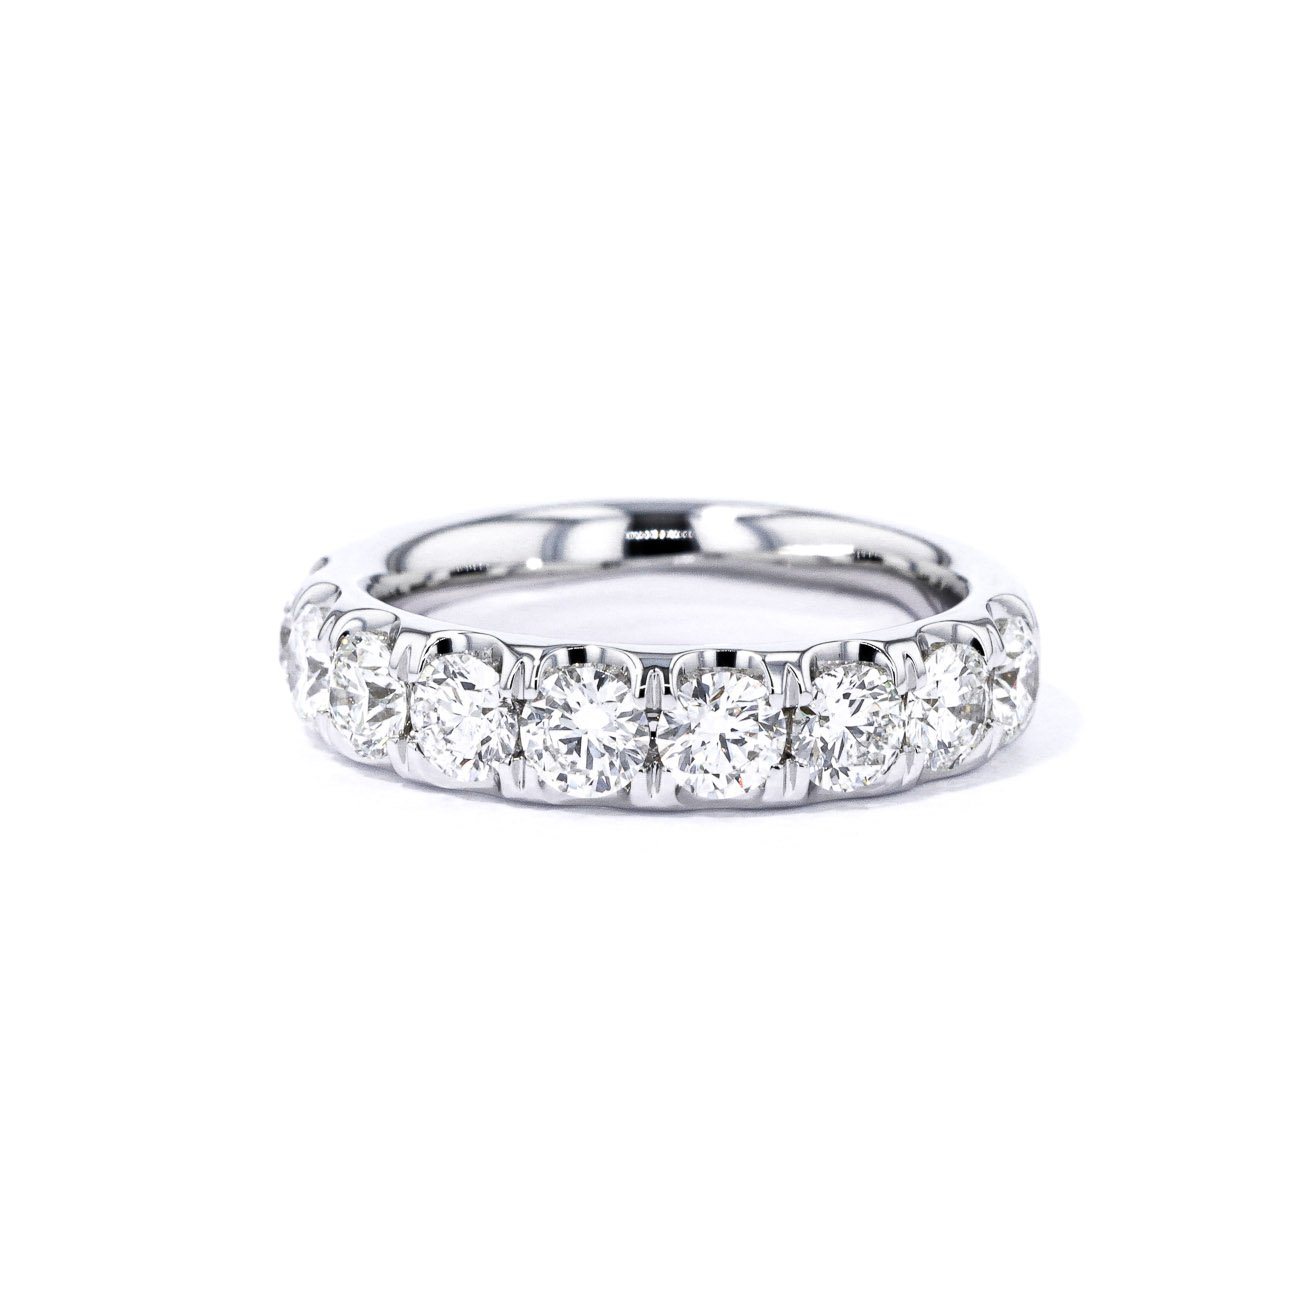 4.9mm Pavé Diamond Ring Ring Princess Bride Diamonds 